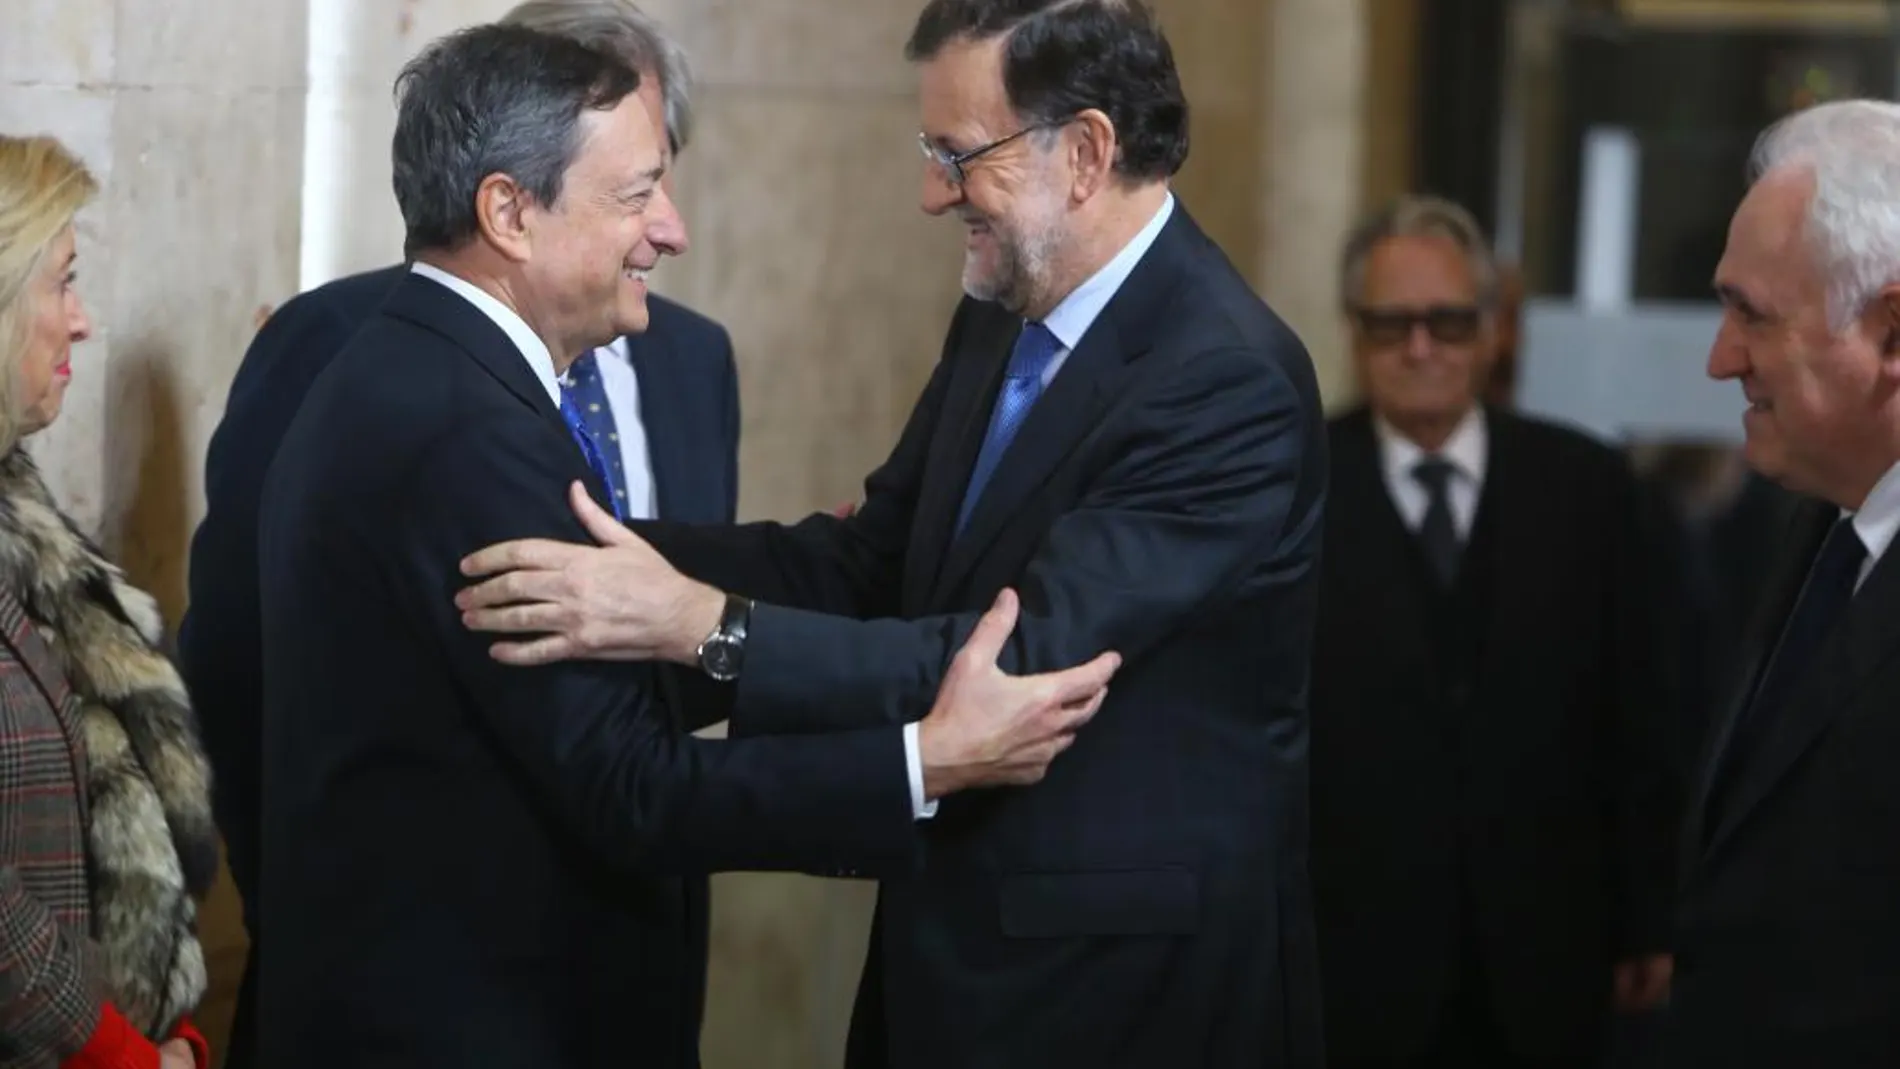 El presidente del Gobierno, Mariano Rajoy, saluda al presidente del Banco Central Europeo (BCE), Mario Draghi